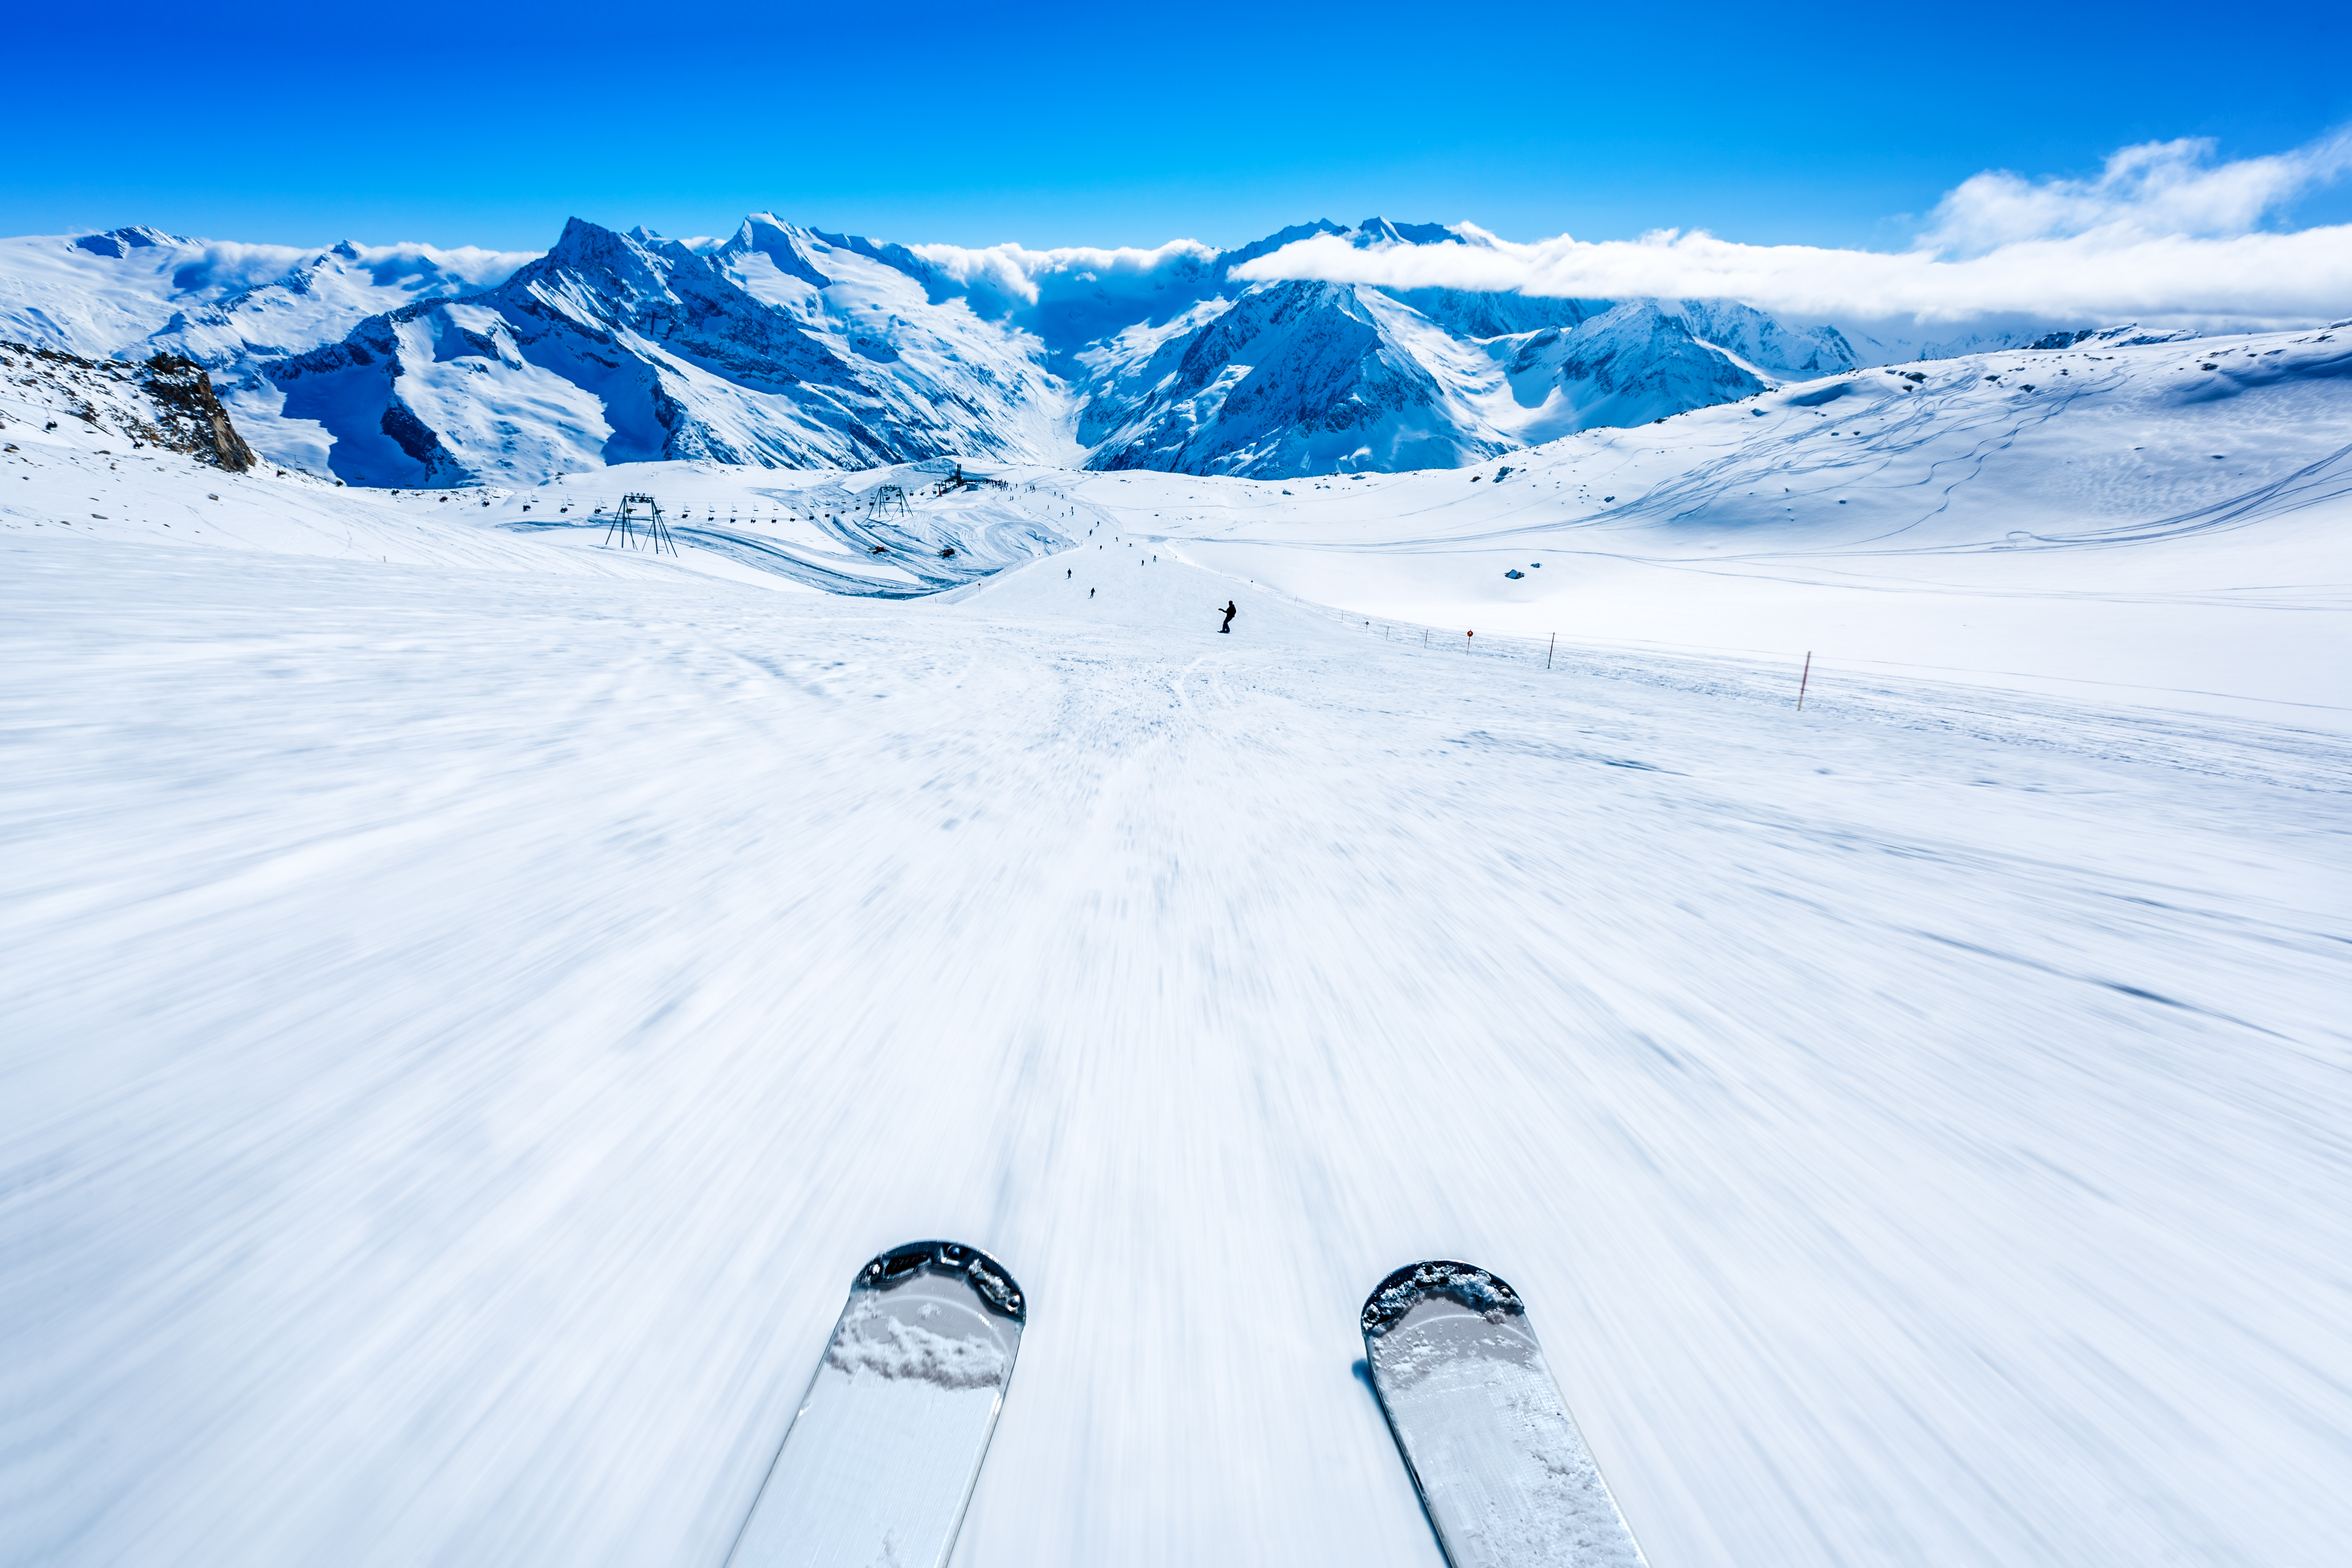 Comment le fart permet à tes skis de glisser de manière optimale